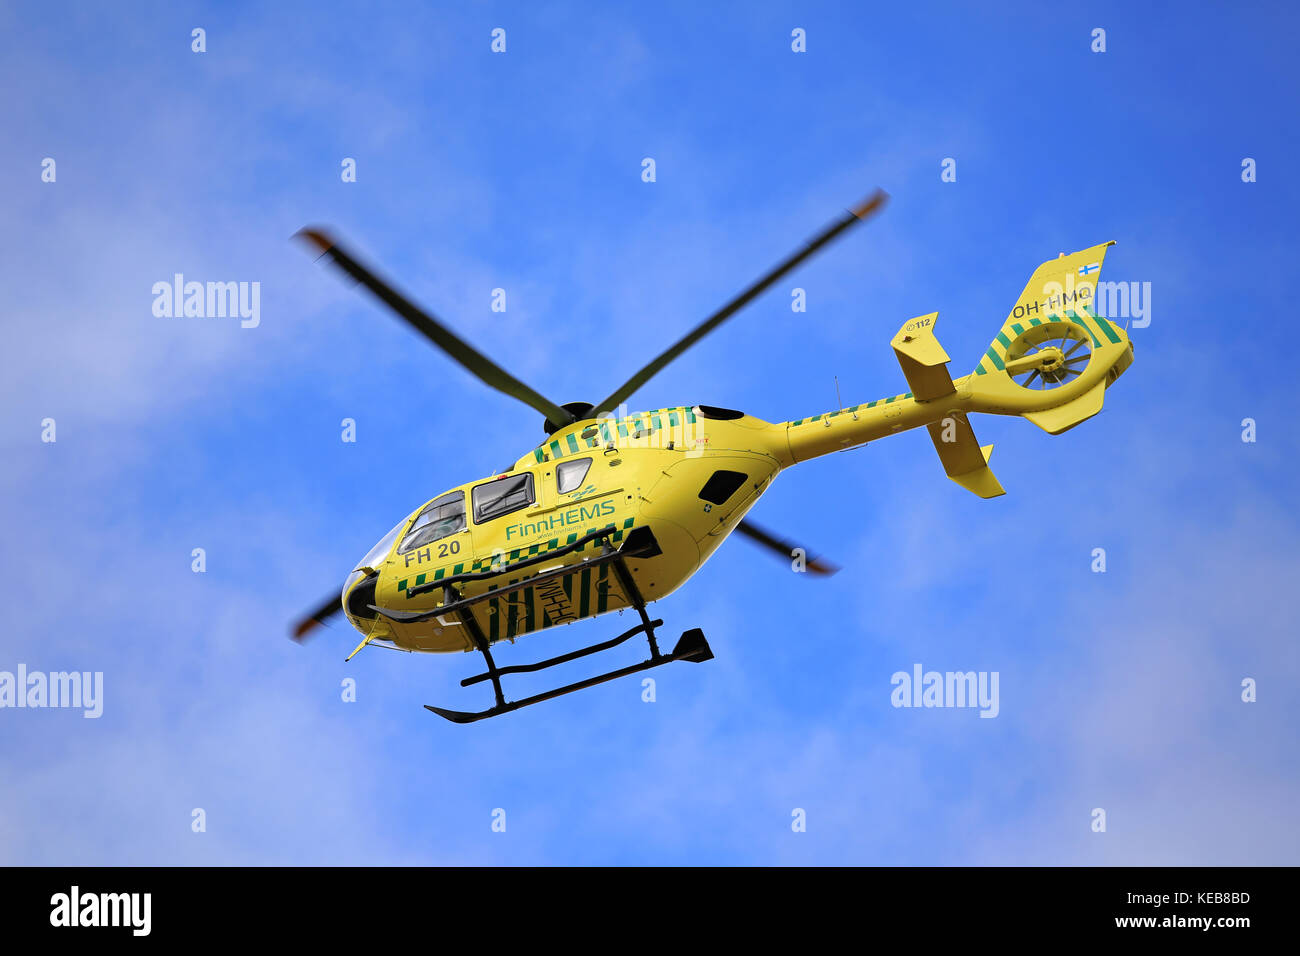 Salo, Finlandia - Marzo 27, 2016: helicóptero médico finnhems en vuelo. finnhems finlandesa es una abreviación para helicópteros de servicios médicos de emergencia. Foto de stock